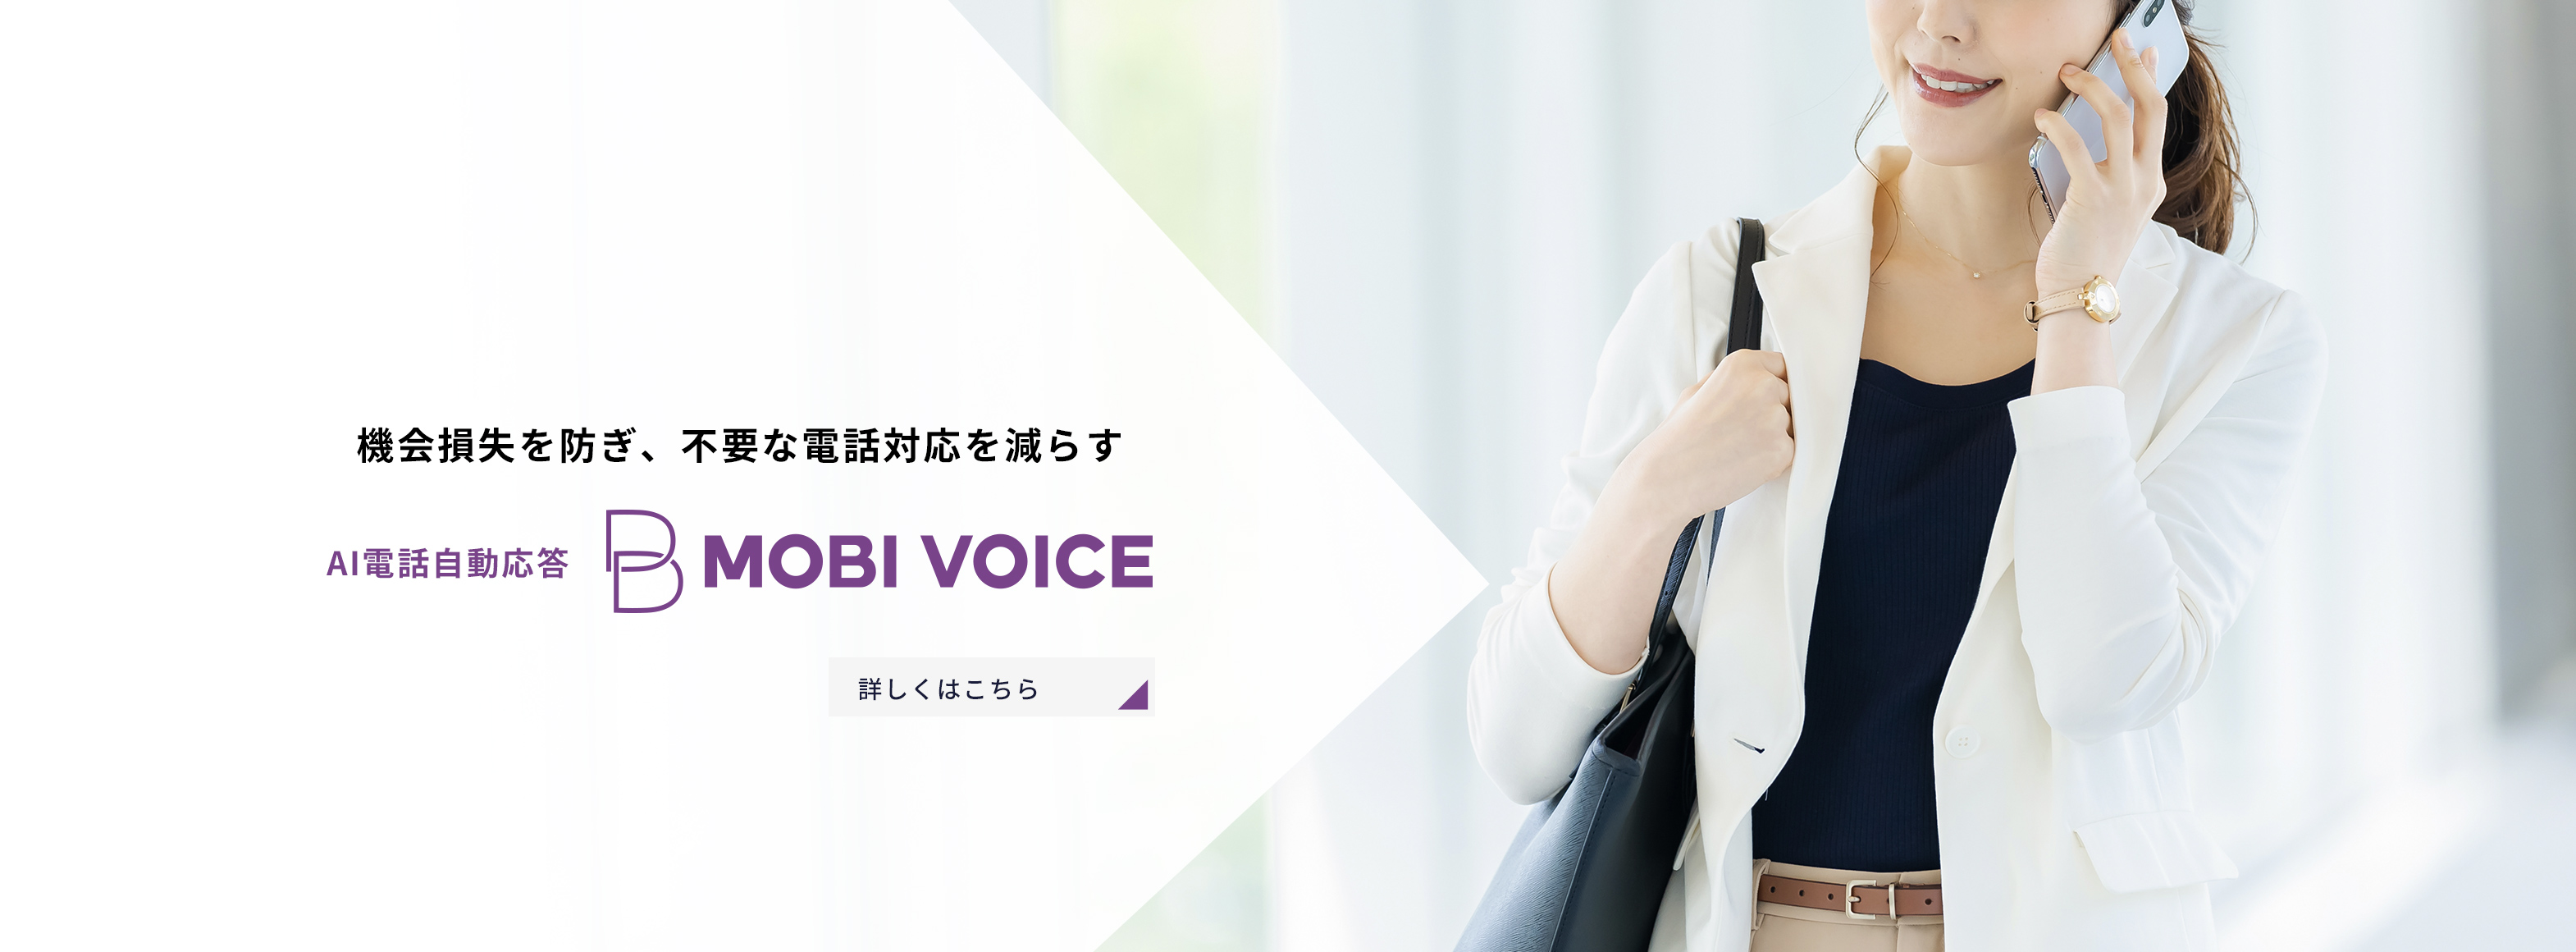 機会損失を防ぎ、不要な電話対応を減らす AI電話自動応答 MOBI VOICE